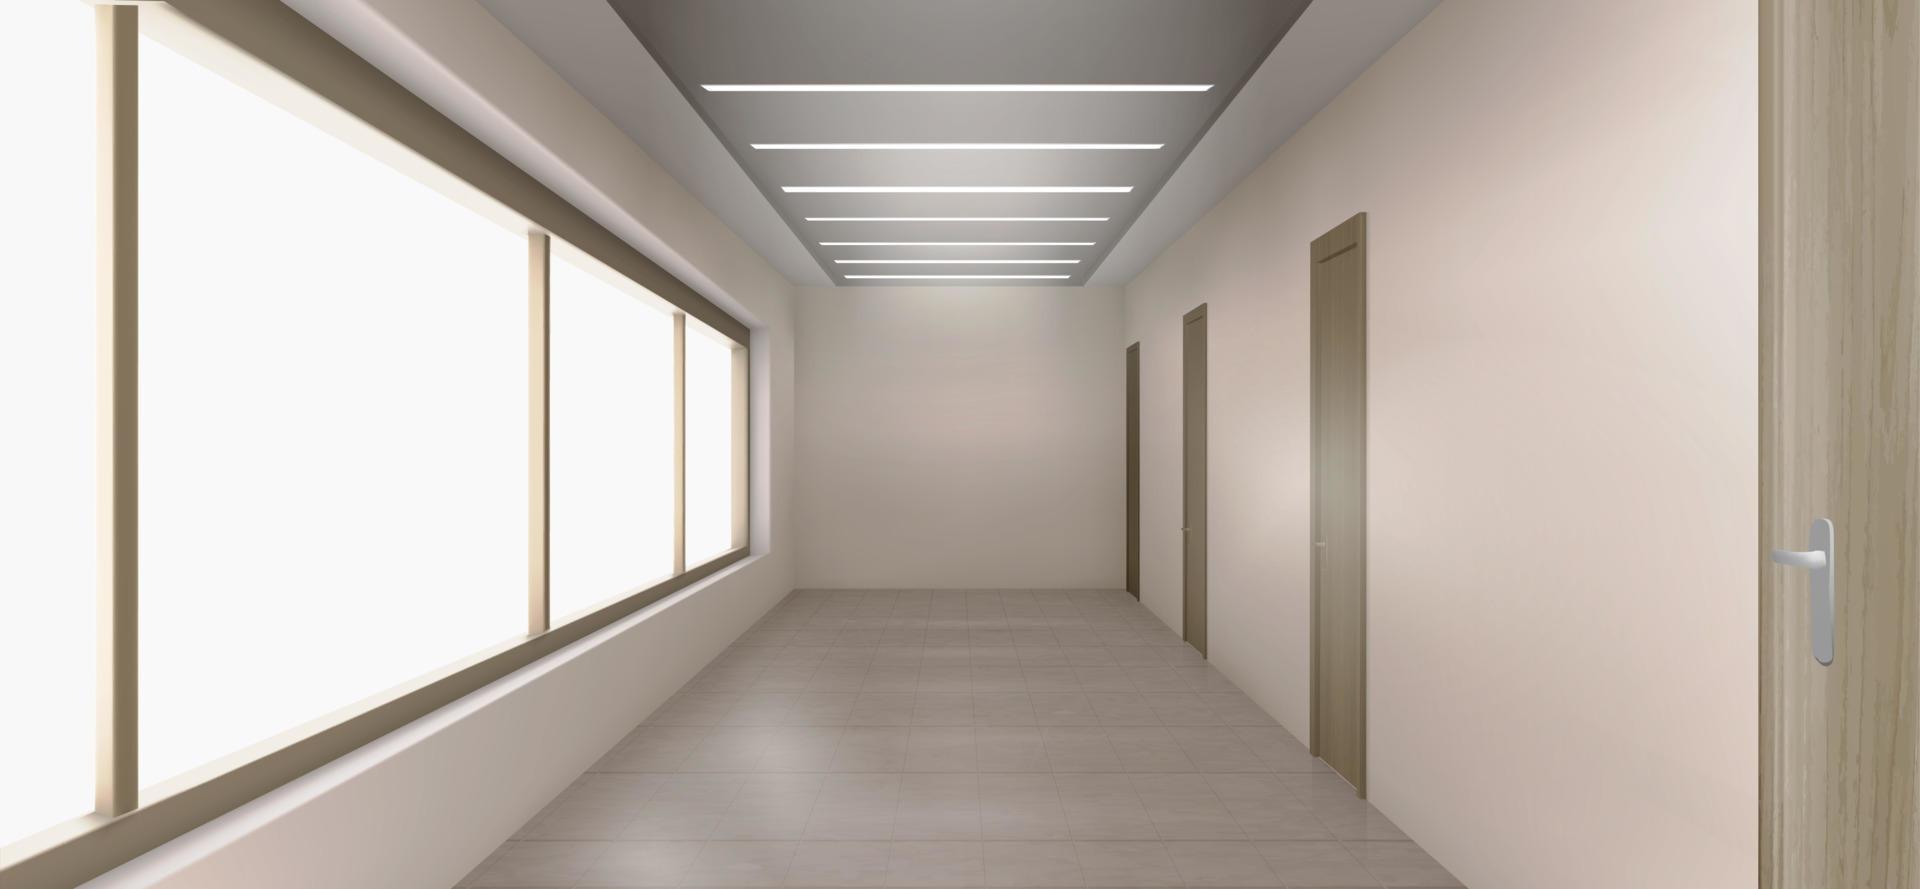 interior del pasillo del hospital con puertas cerradas vector